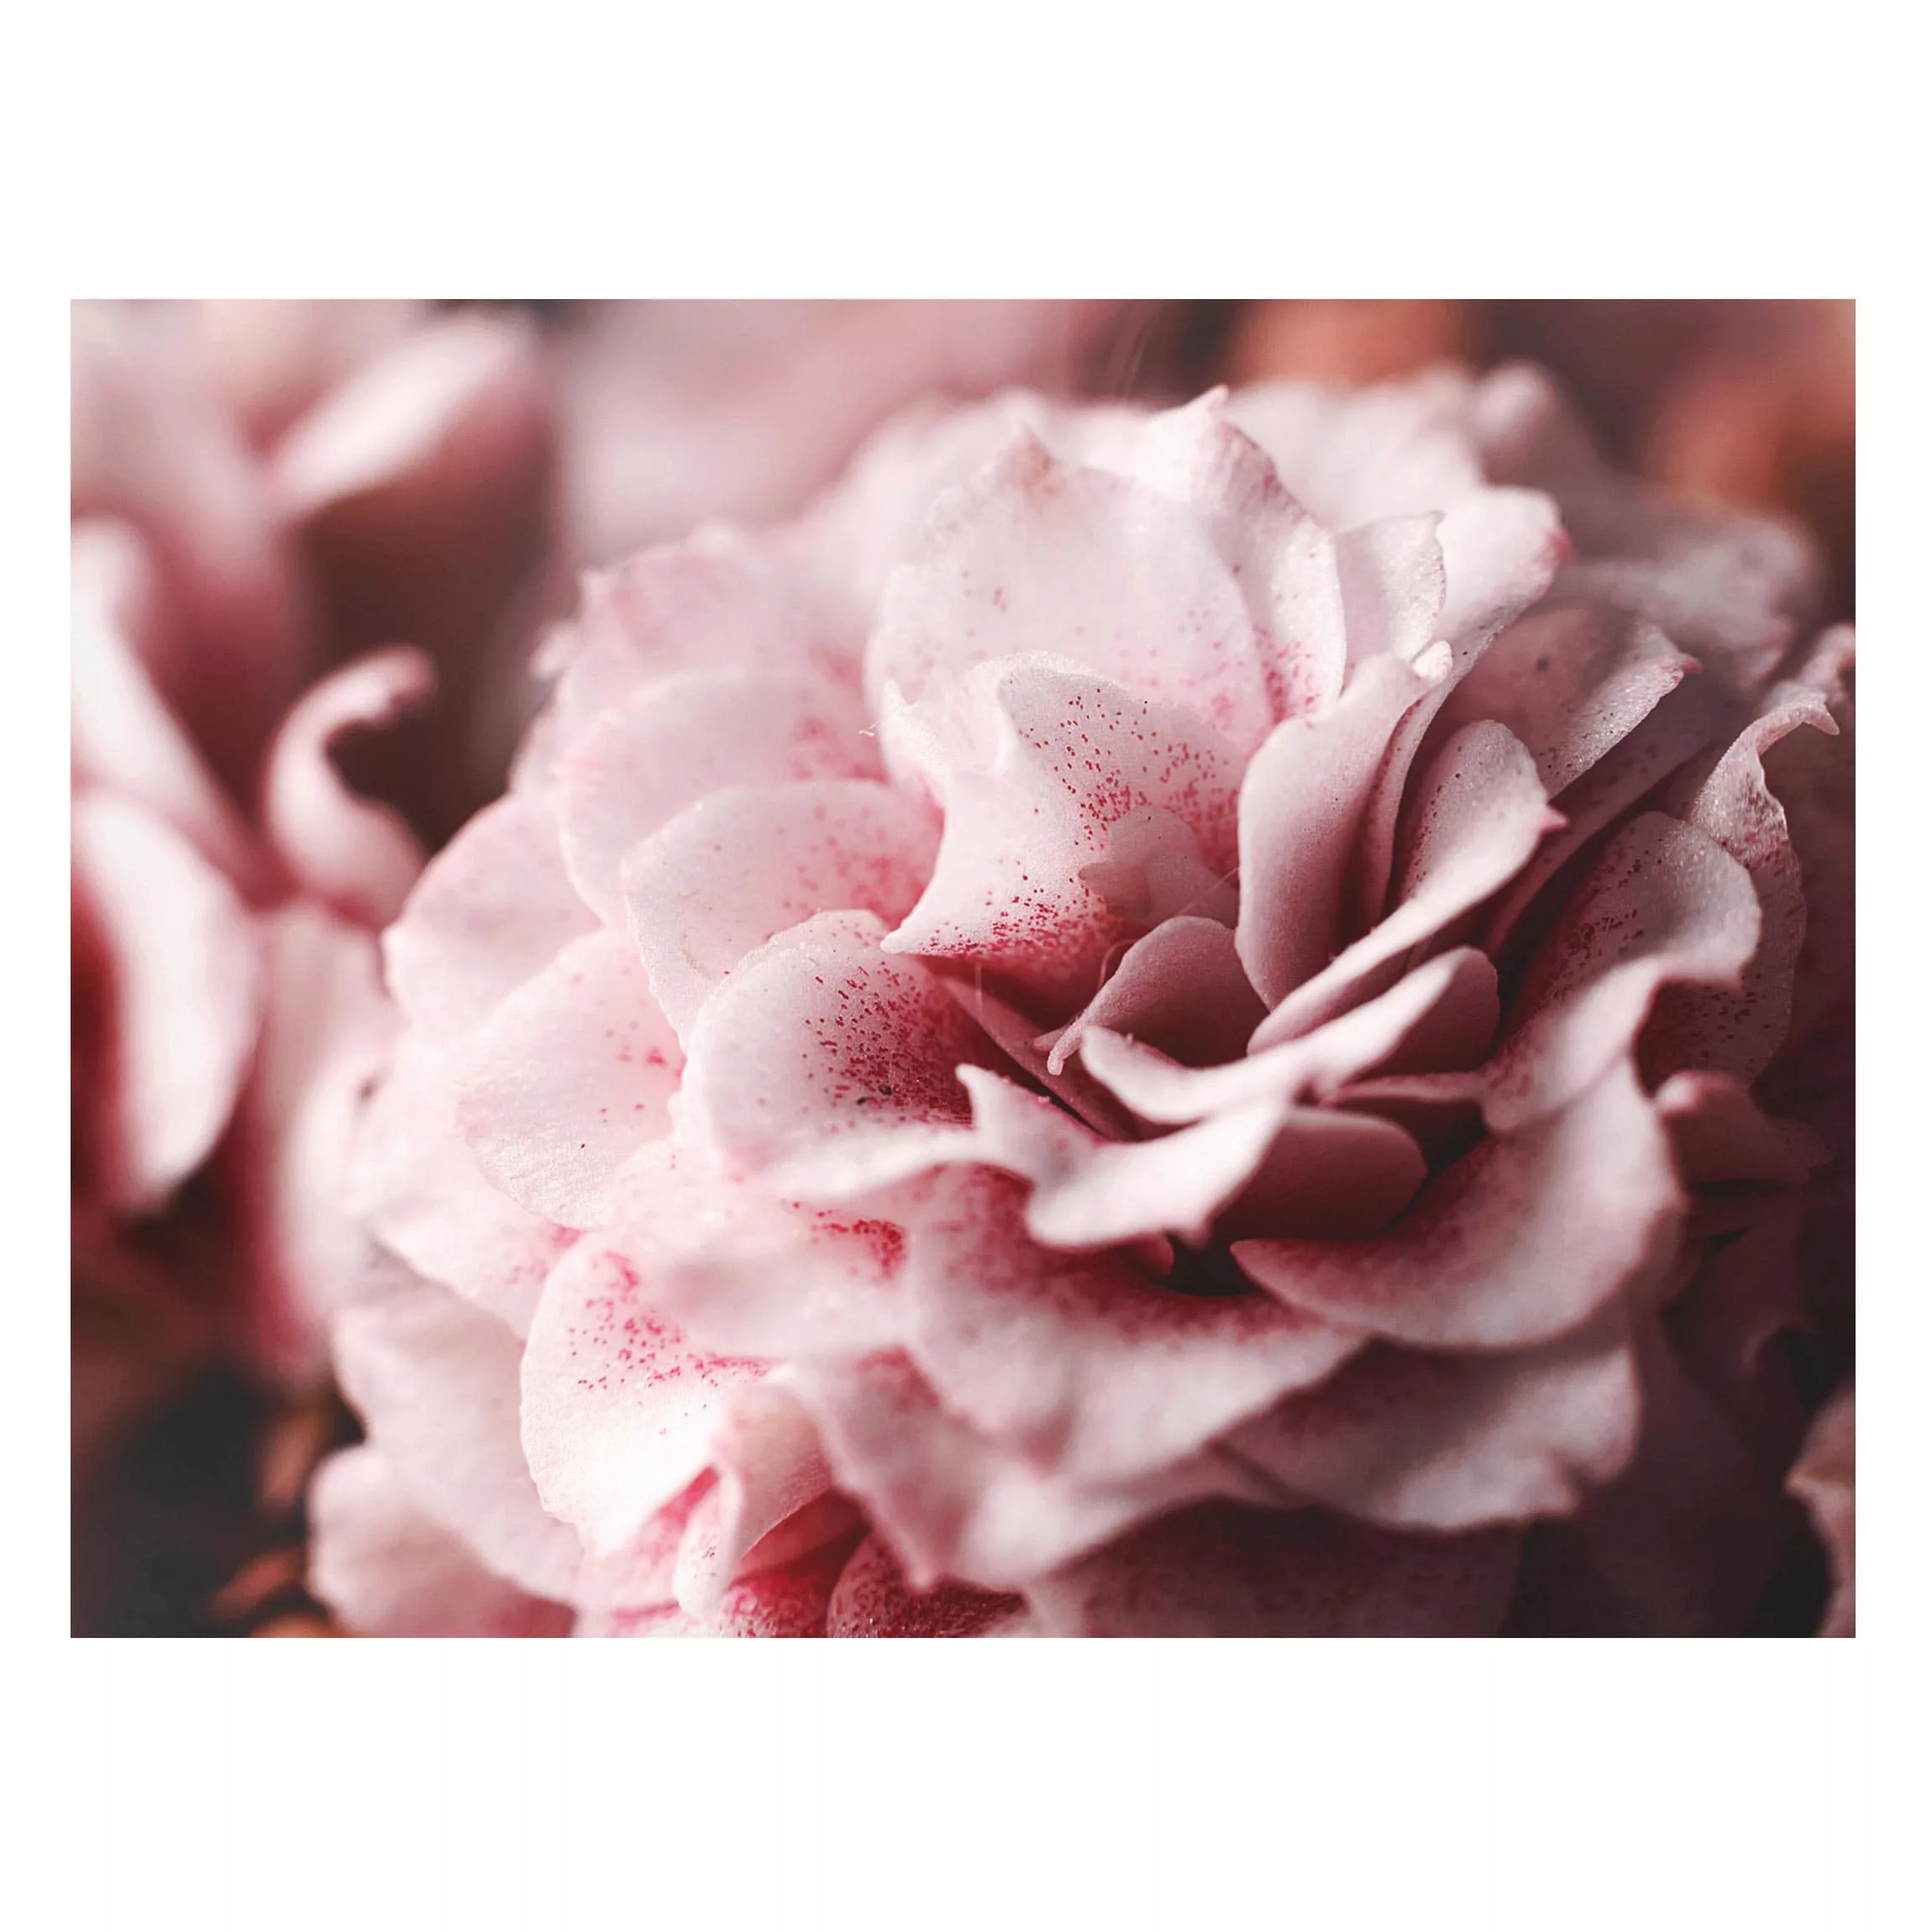 Magnettafel Blumen - Querformat 4:3 Shabby Rosa Rose Pastell günstig online kaufen